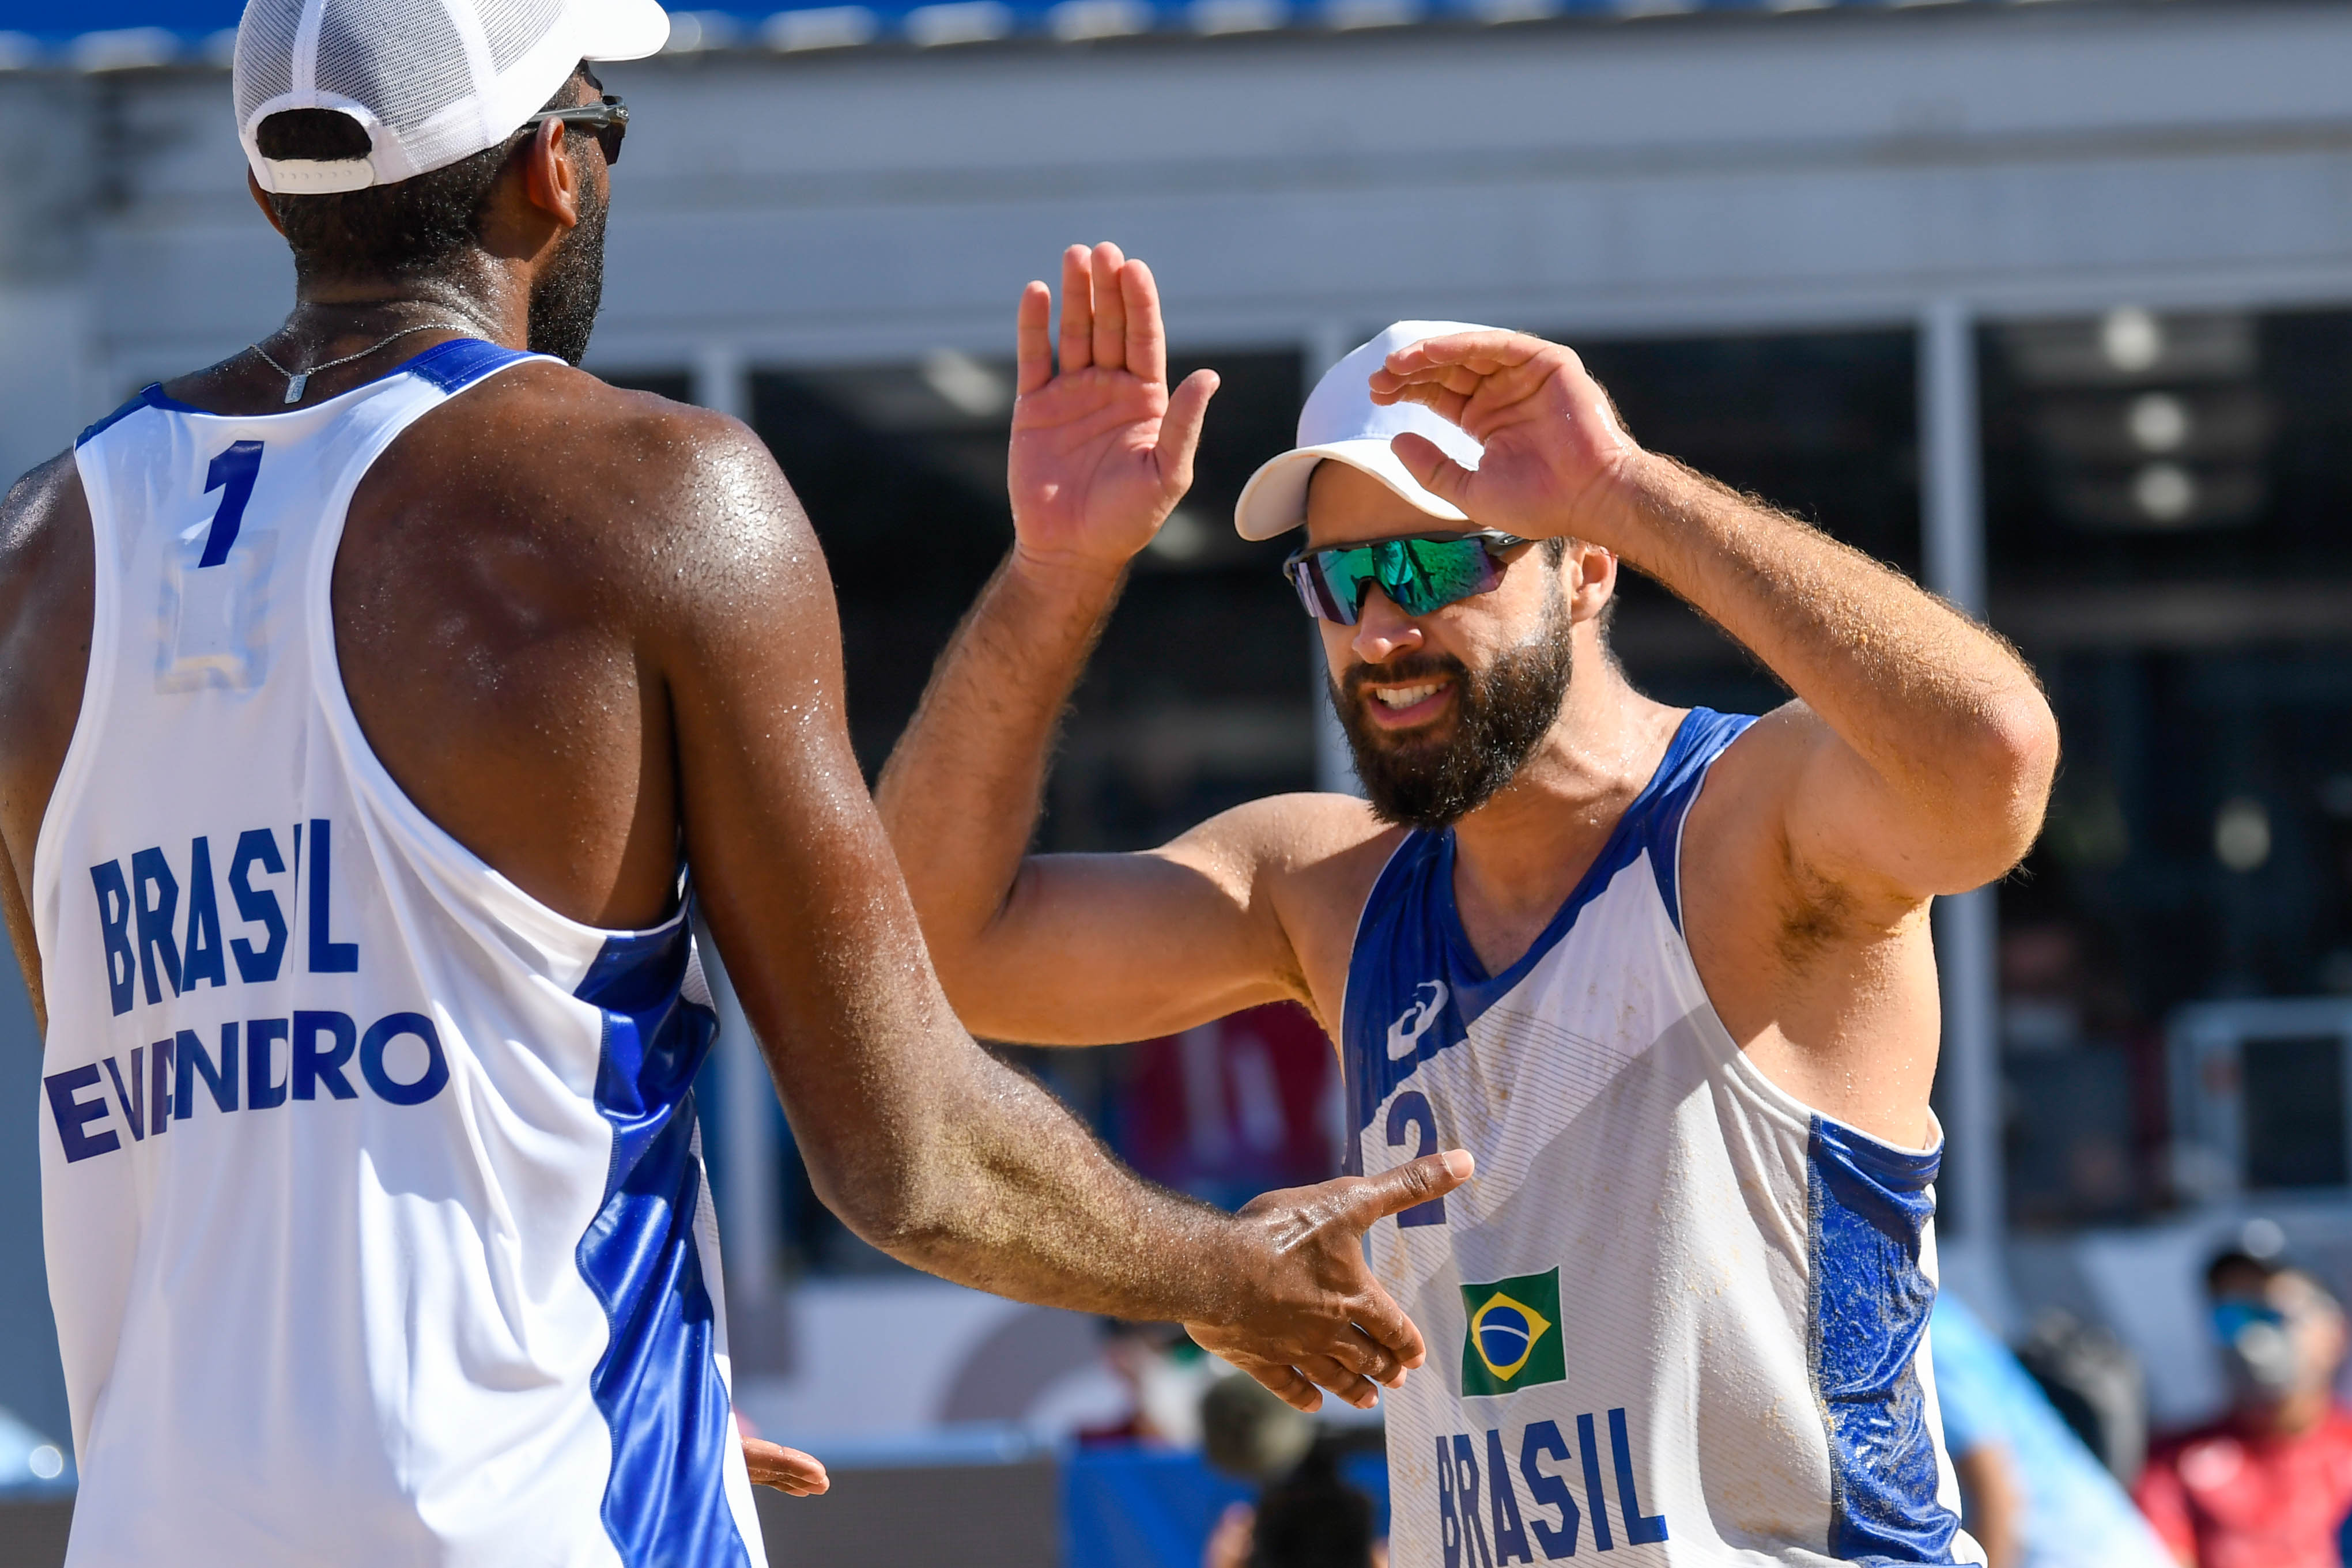 A dupla de vôlei de praia brasileira, Bruno Schmdt e Evandro vencem os marroquinos Abicha e Elgraoui em Shiozake Park, Tóquio